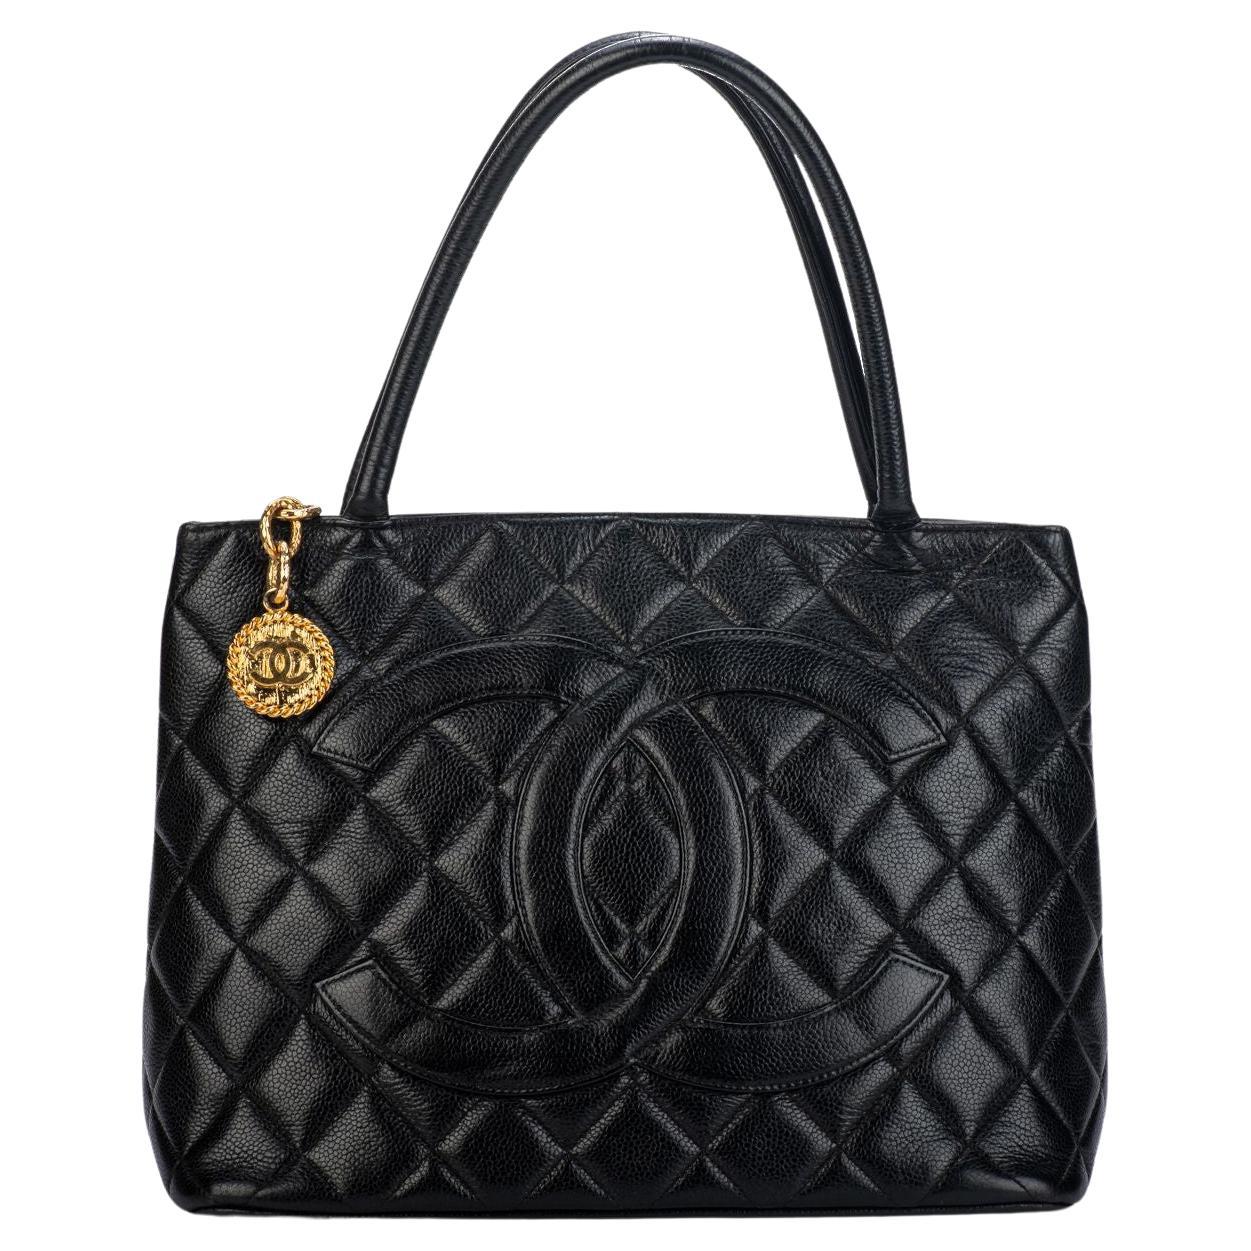 Chanel Caviar Medallion Handbag - 14 For Sale on 1stDibs